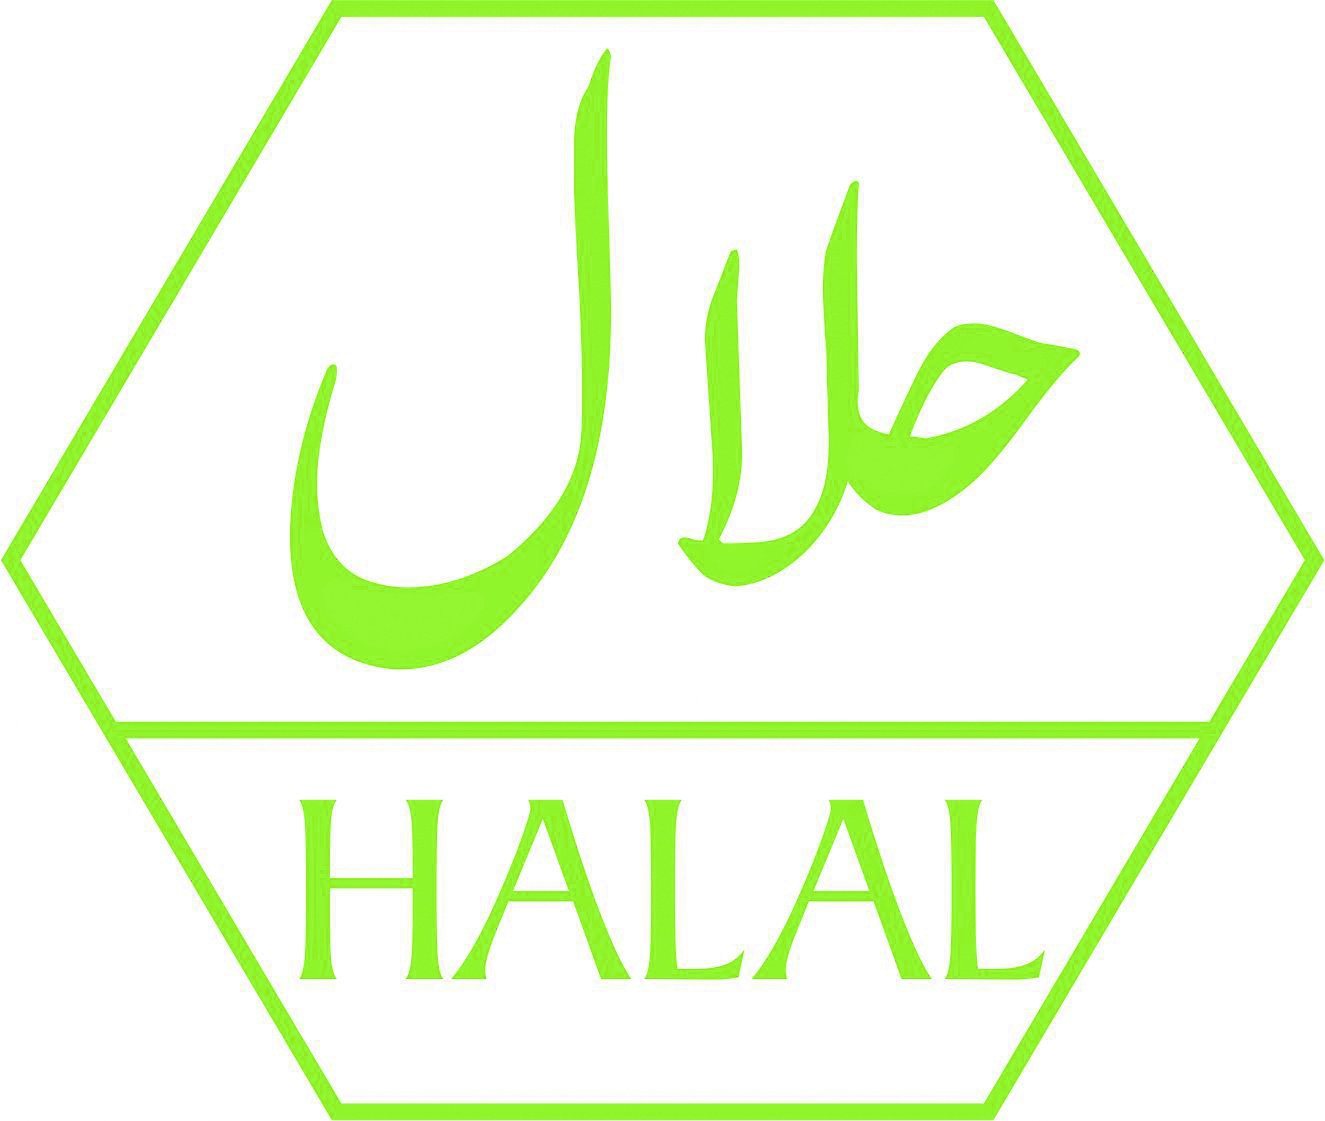 Вода халяль. Халяль. Значок Халяль. Логотип халал. Halal Халяль logo.